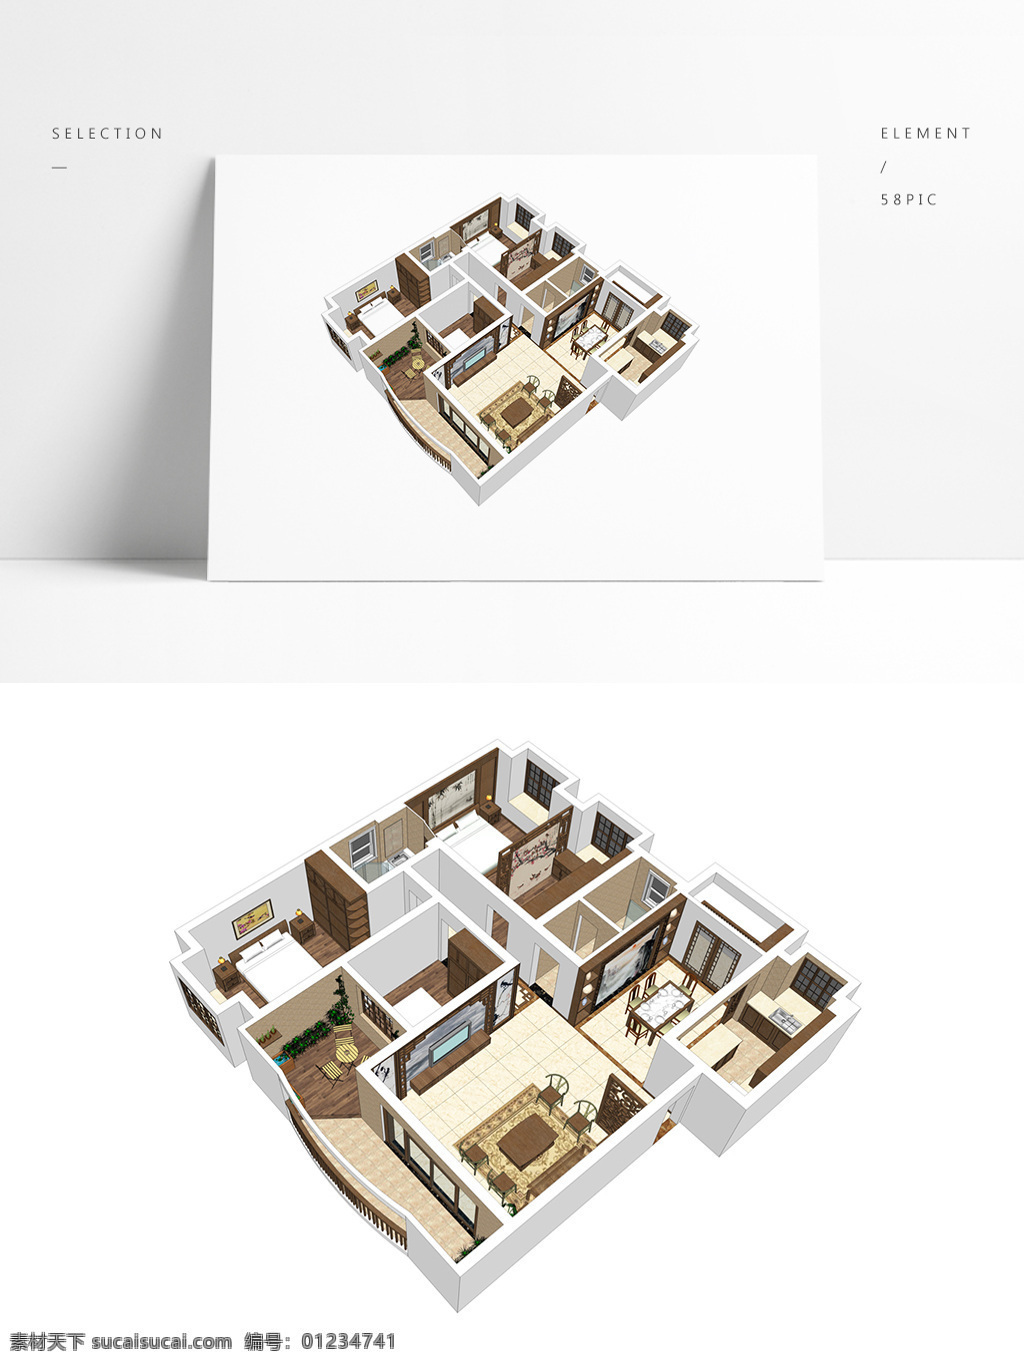 中式 风格 草图 大师 透视 模型 室内空间设计 住宅室内设计 样板房 3d模型 su模型 草图大师模型 家具模型 中式风格设计 透视模型